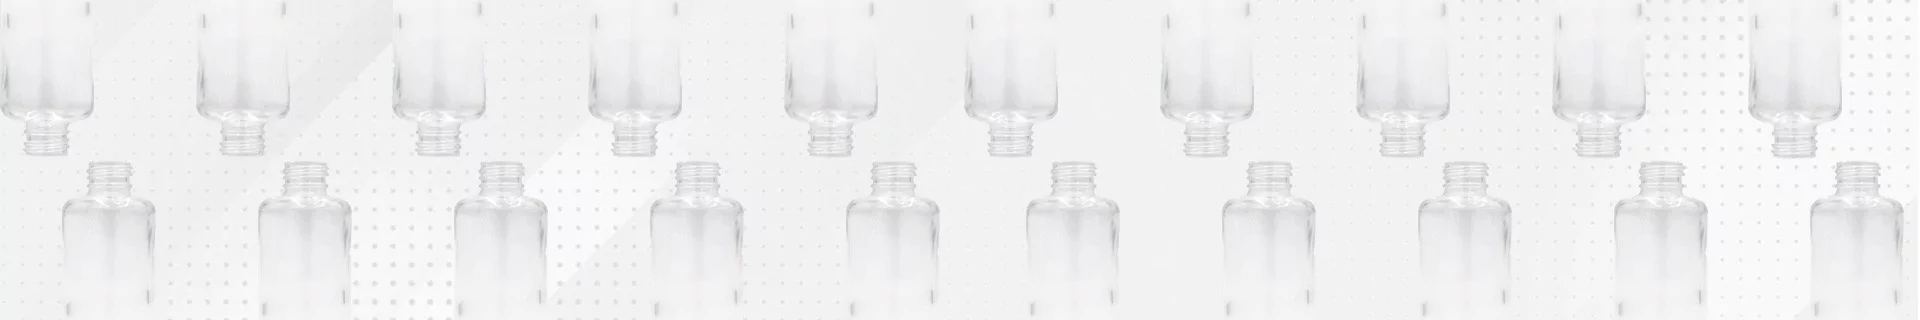 Flacon verre, fabricant de flacon en verre pour cosmétique, flacon verre produit pharmaceutique